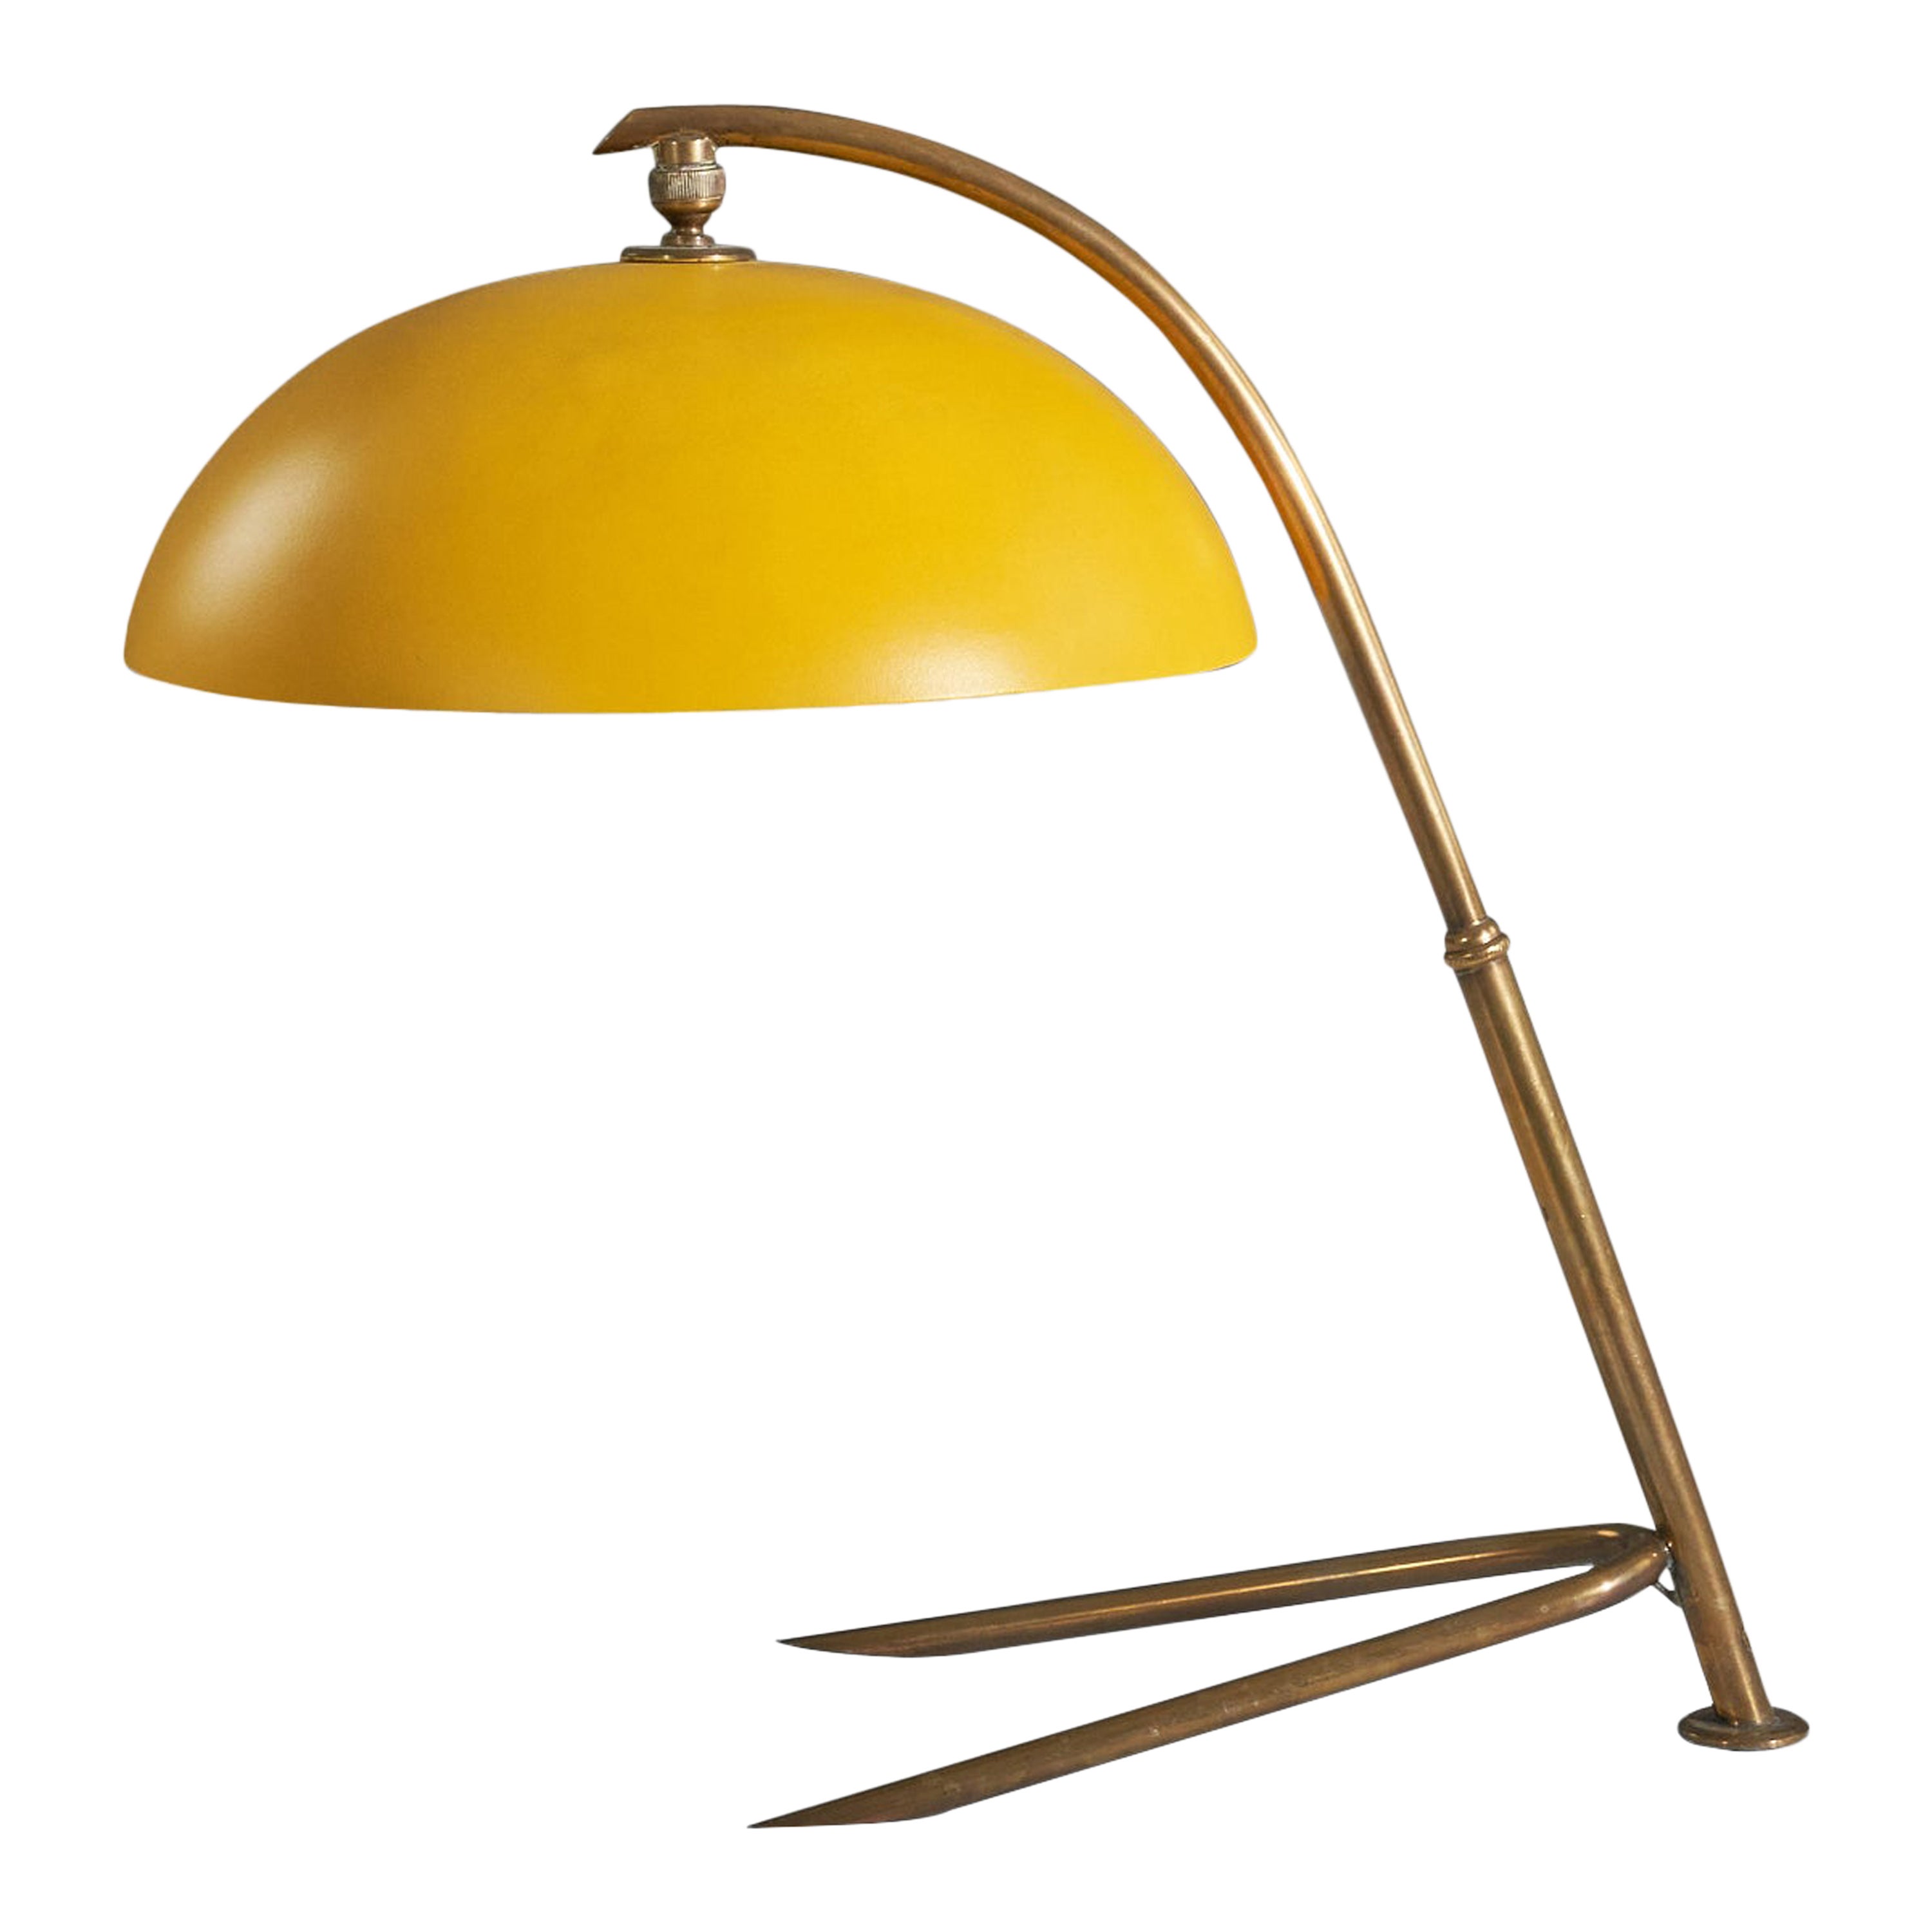 Tischlampe von Stilnovo, Messing, gelb lackiertes Metall, Italien, 1950er Jahre